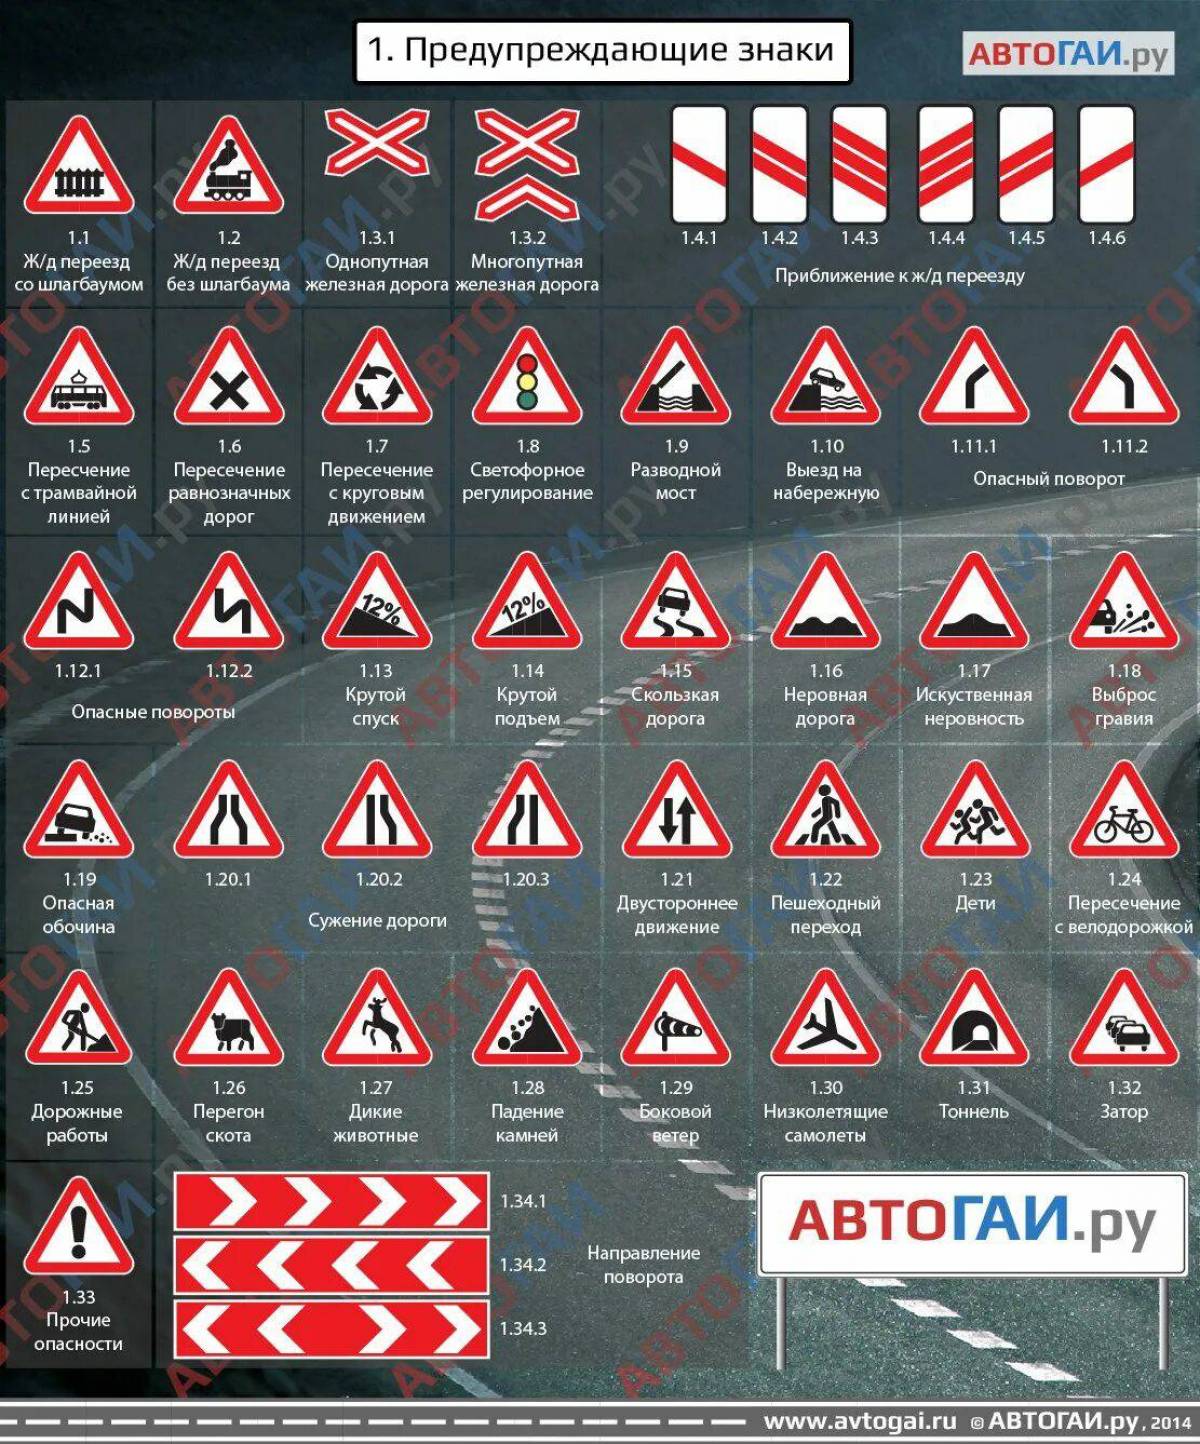 Дорожного движения картинки с пояснениями. Знаки ПДД И их обозначения. Предупреждающие знаки ПДД 2021. Обозначение знаков дорожного движения 2020. Дорожные знаки с пояснениями и обозначениями для водителя.